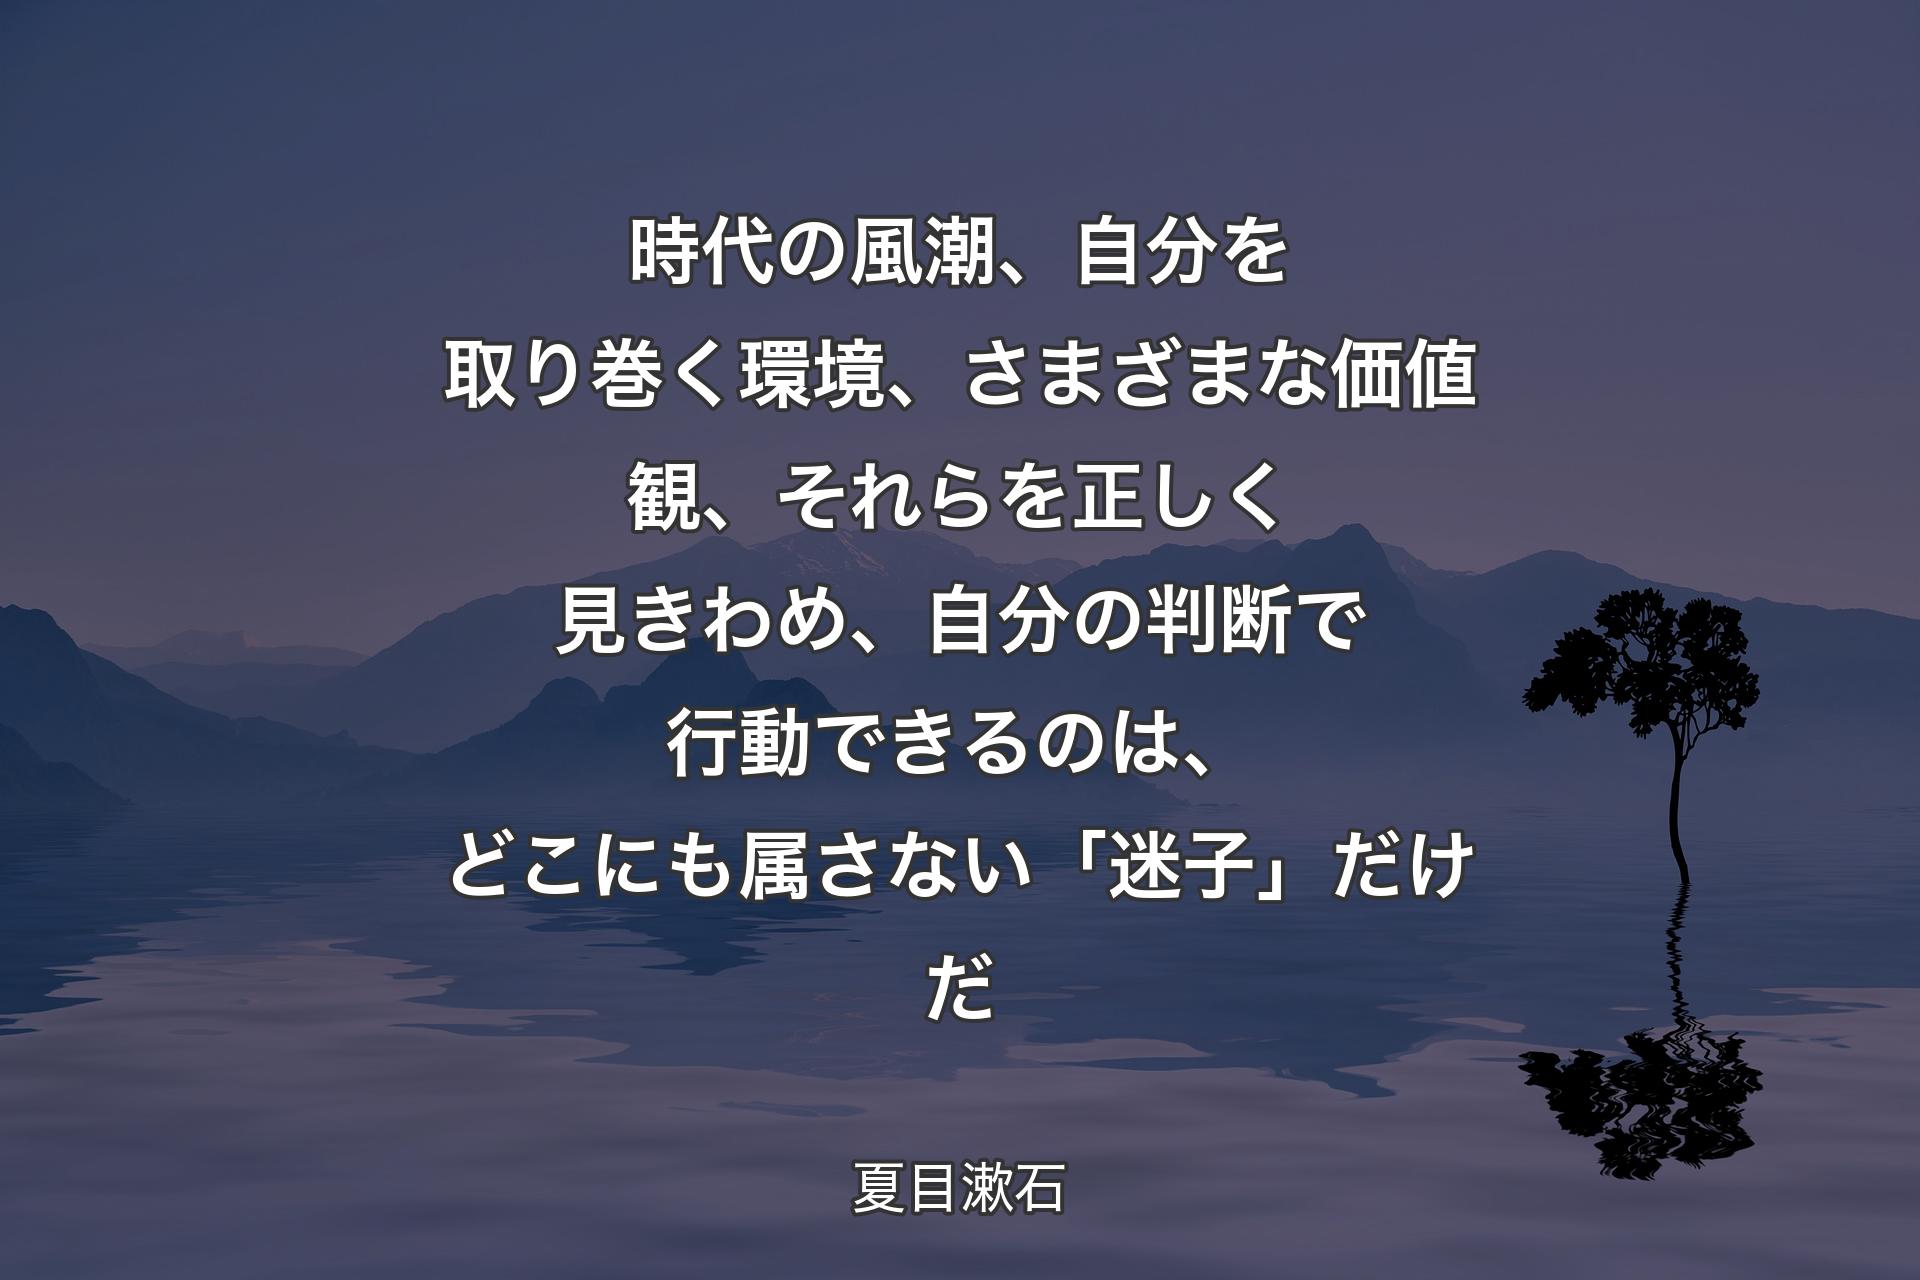 時代の風潮、自分を取り巻く環境、さまざまな価値観、それらを正しく見きわめ、自分の判断で行動できるのは、どこにも属さない「迷子」だけだ - 夏目漱石